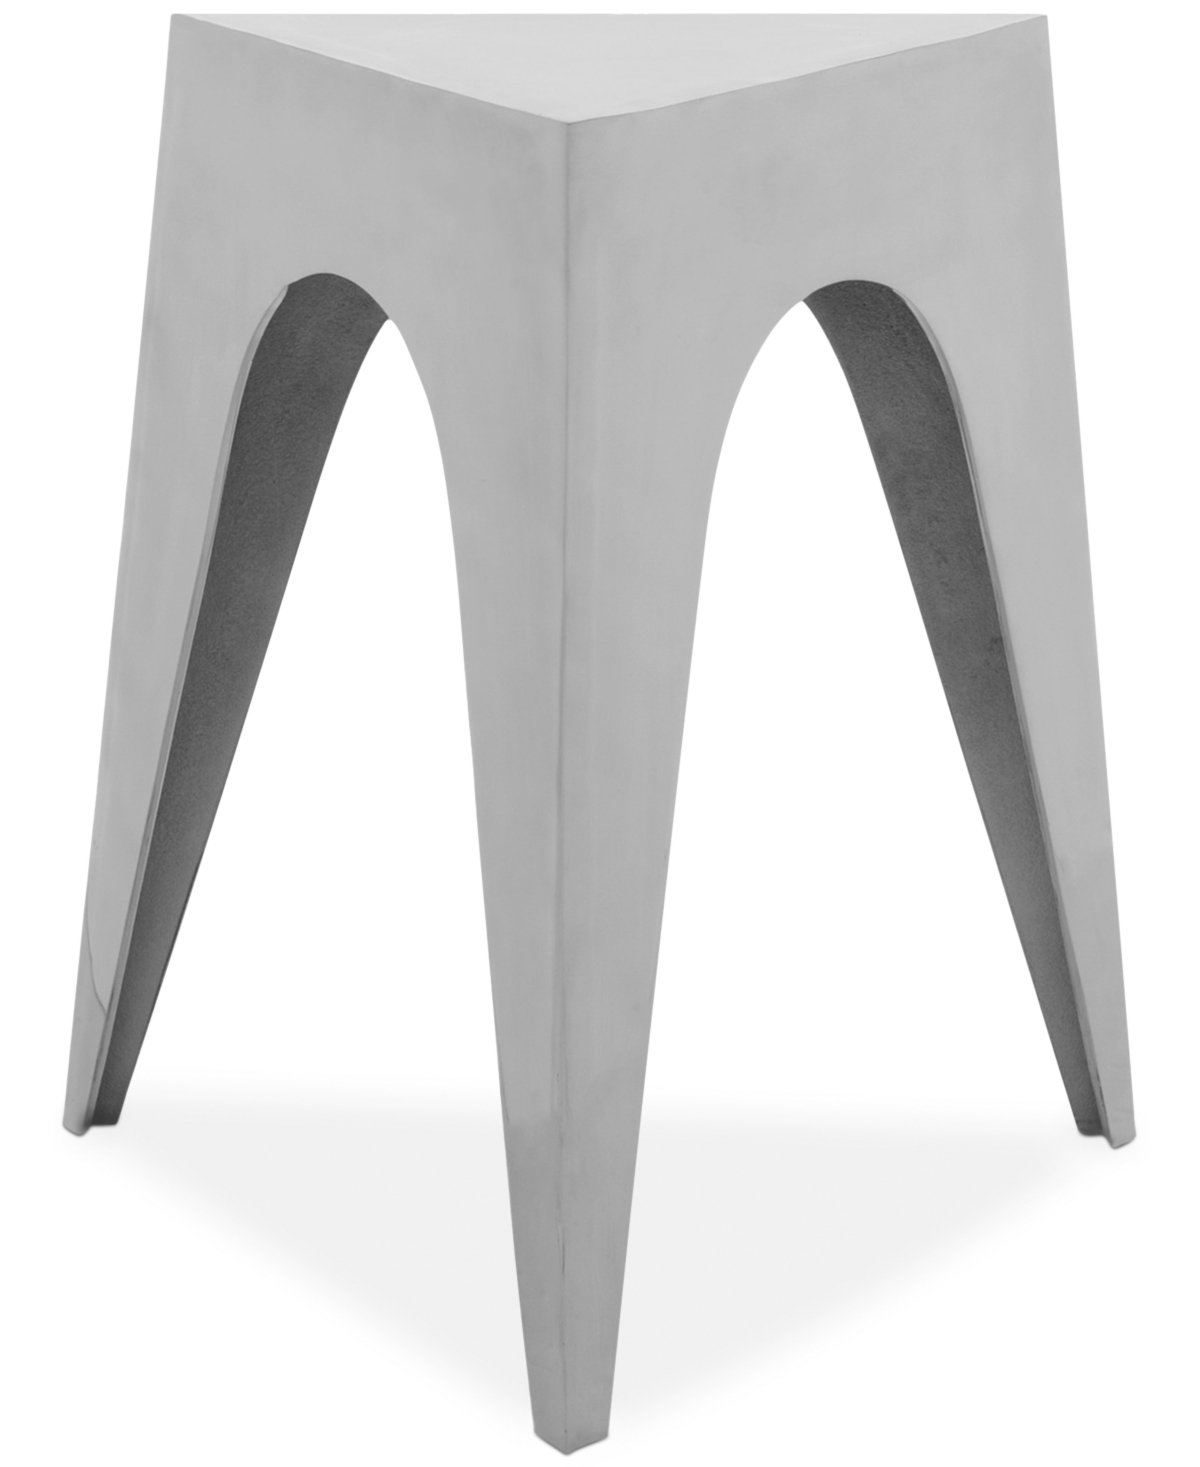 Akito Aluminum Triangle Side Table Stool